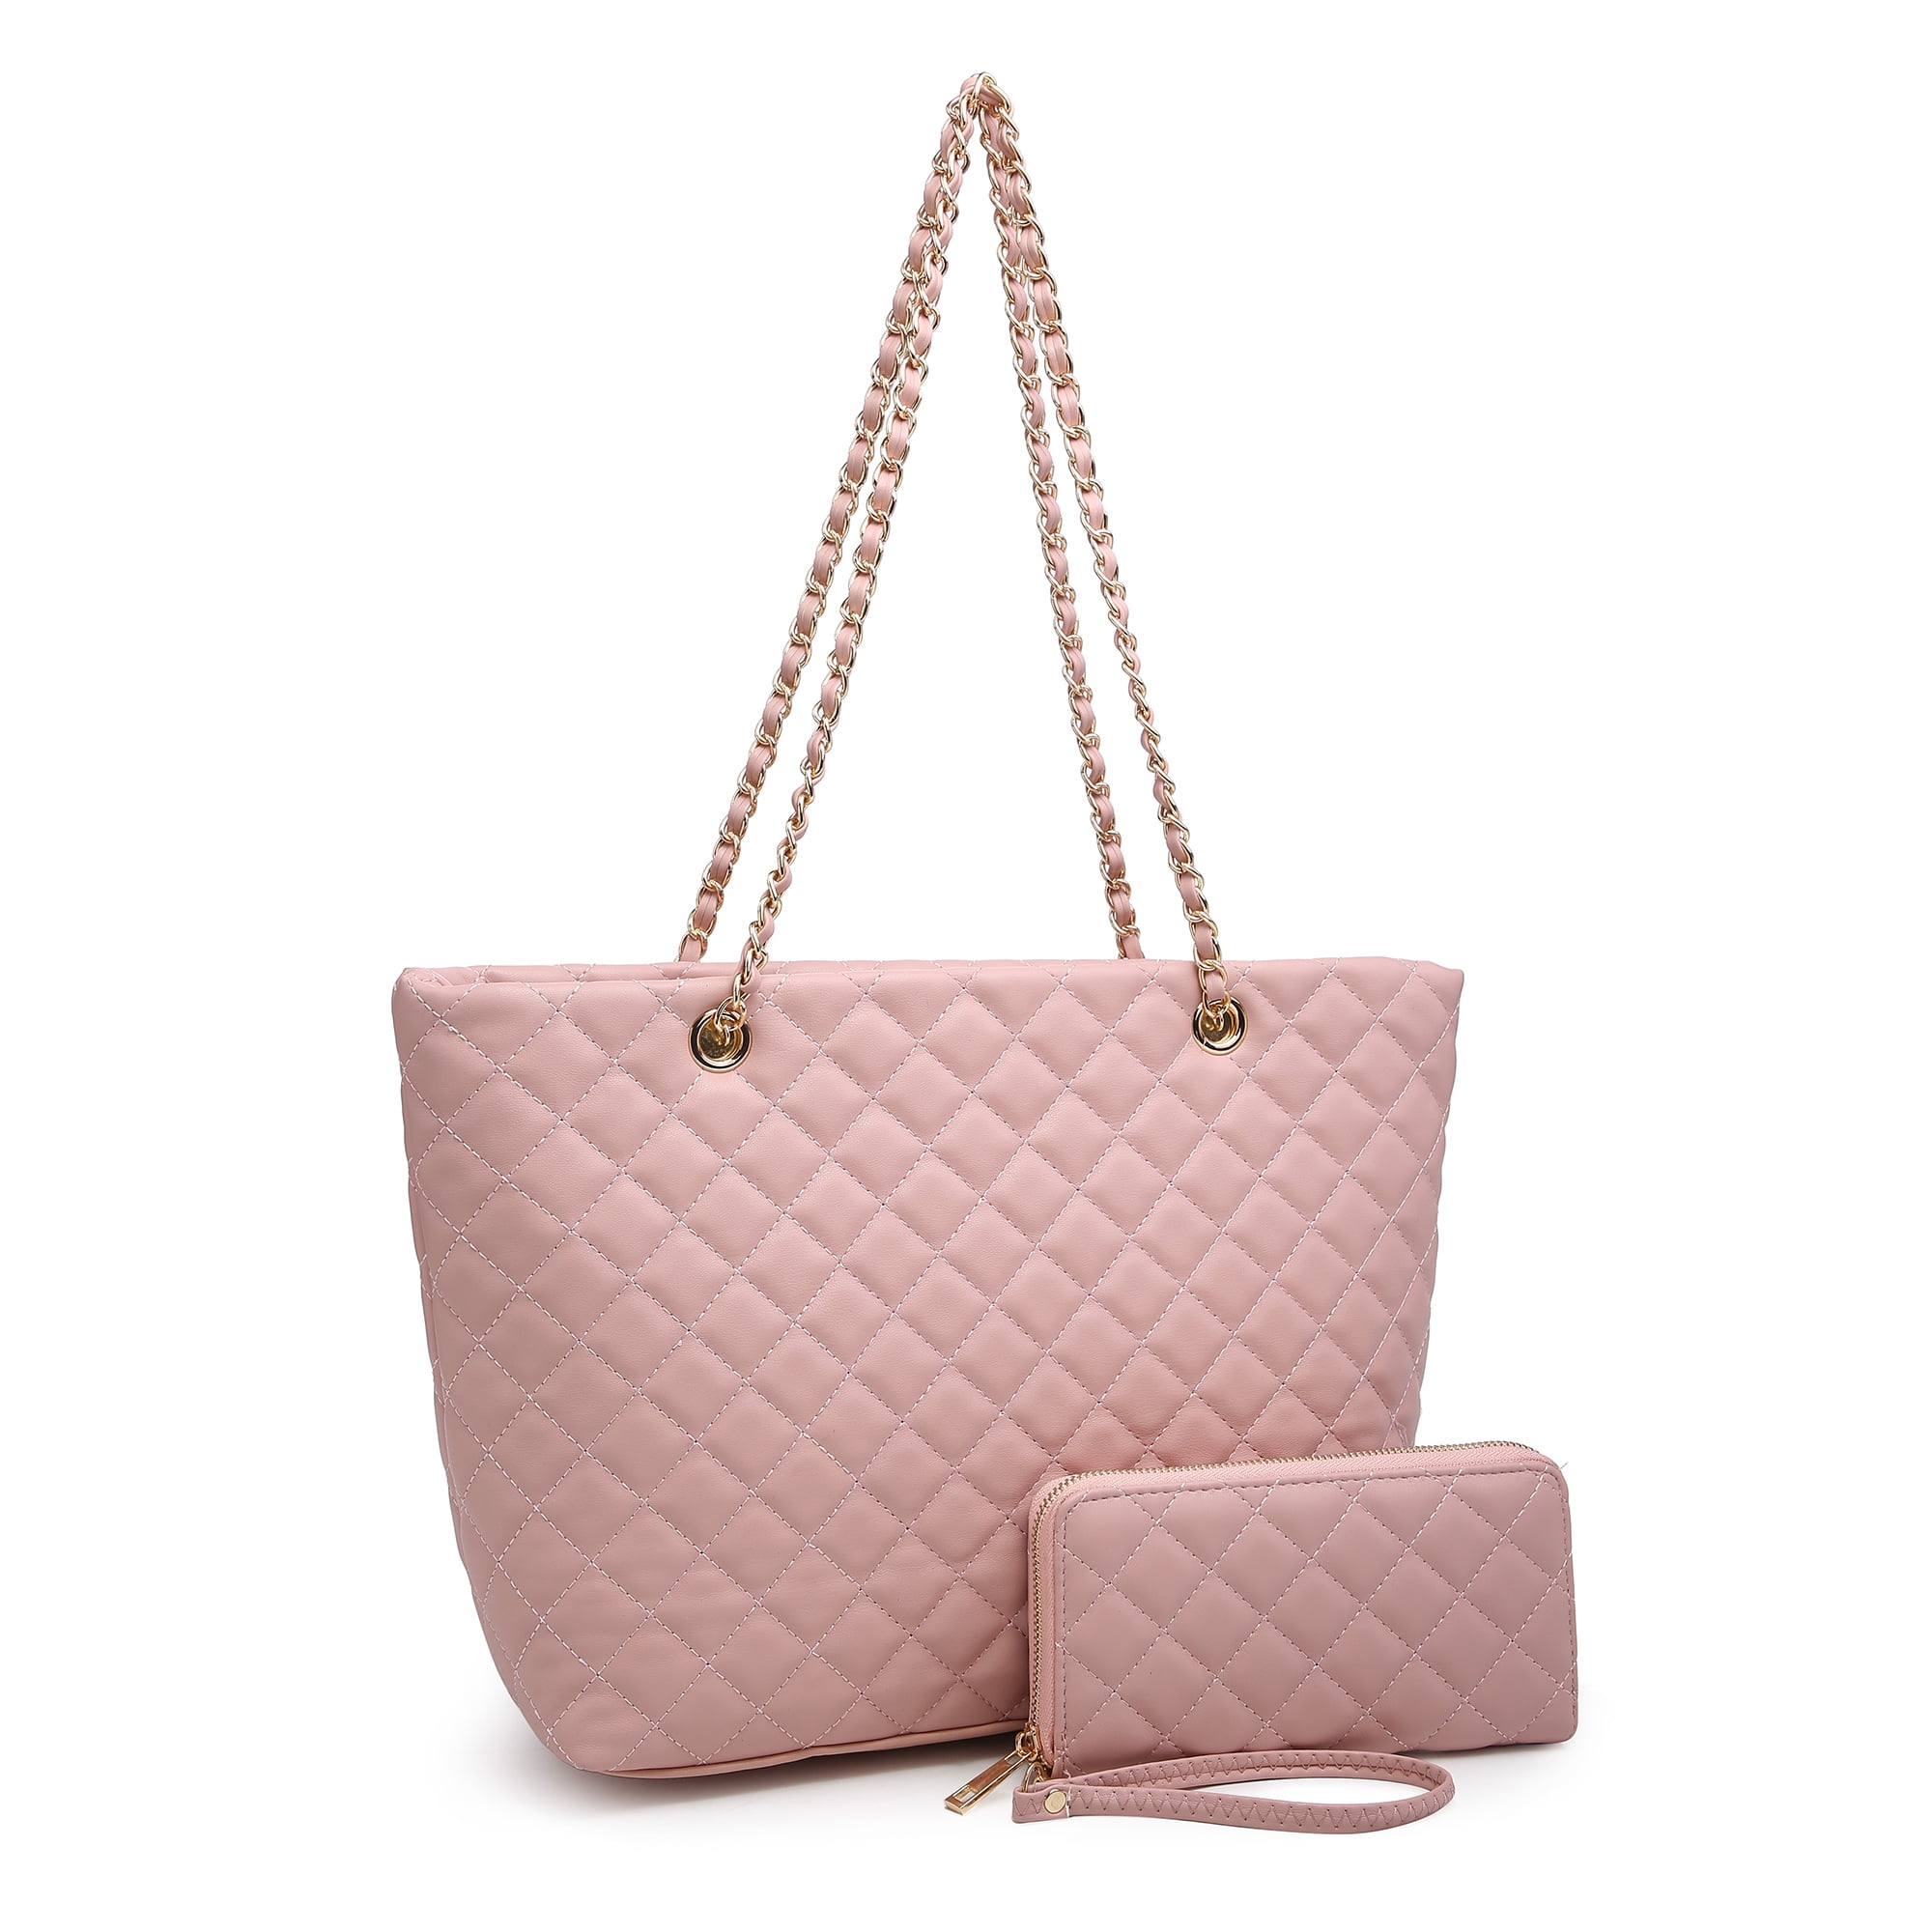 Metal Detail Shoulder Tote Bag Pink Large Capacity